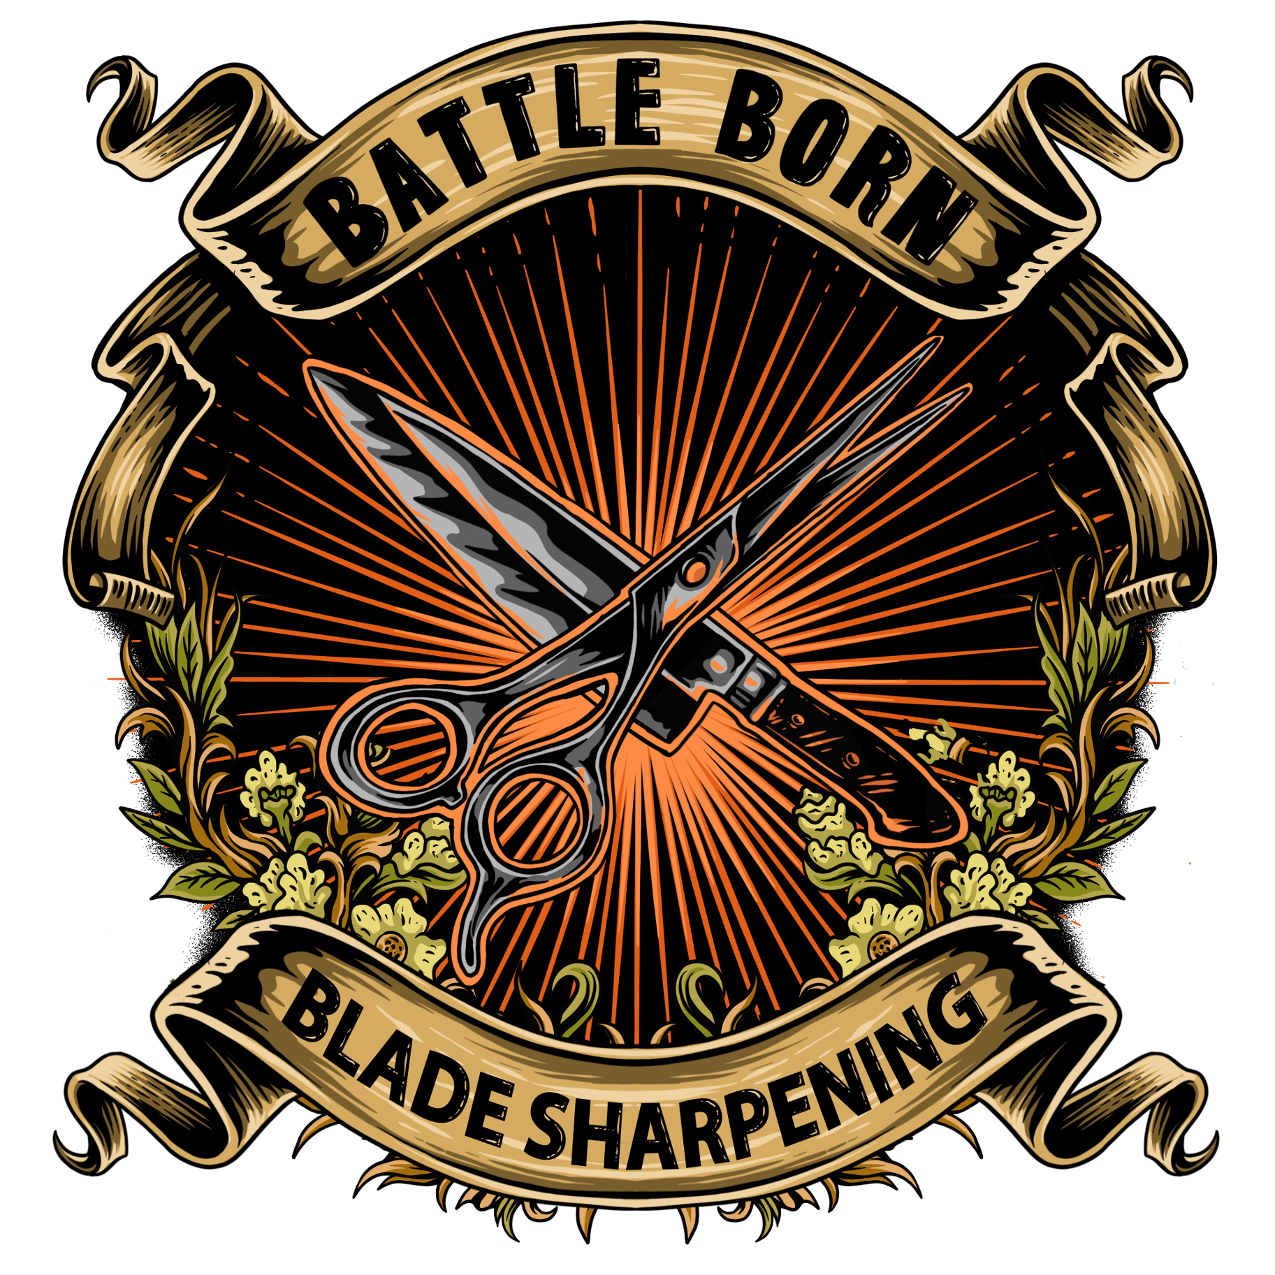 Clipper Blade Sharpening Training School